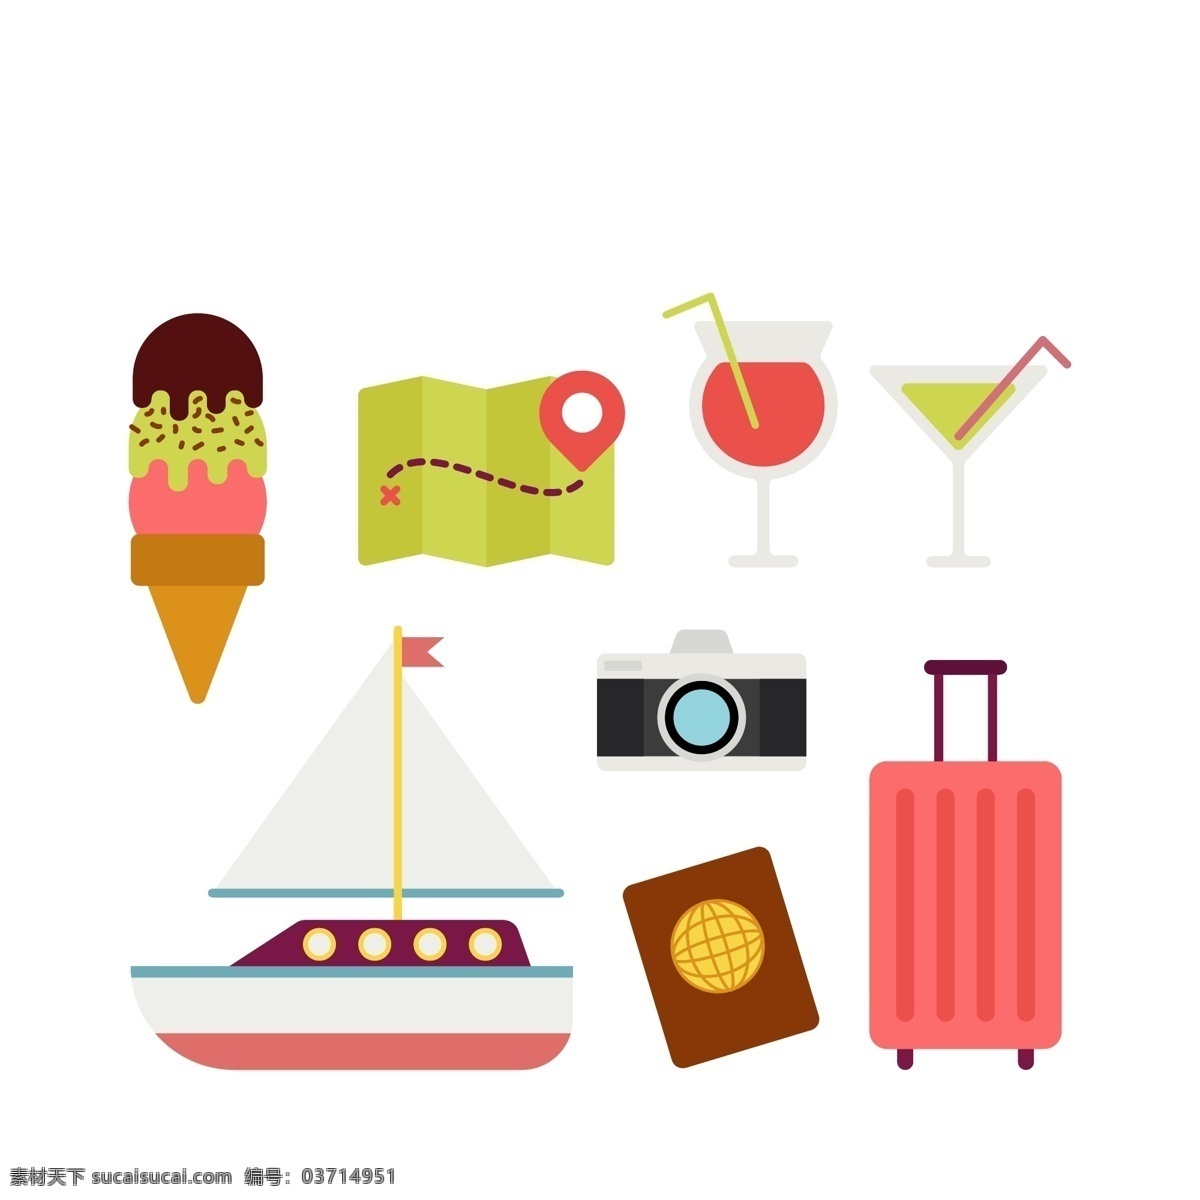 旅行元素图片 旅行元素 旅游元素 度假元素 度假图案 旅游图标 夏日图标 卡通元素 插图 手绘 插画 ai矢量 旅行箱 护照 icon